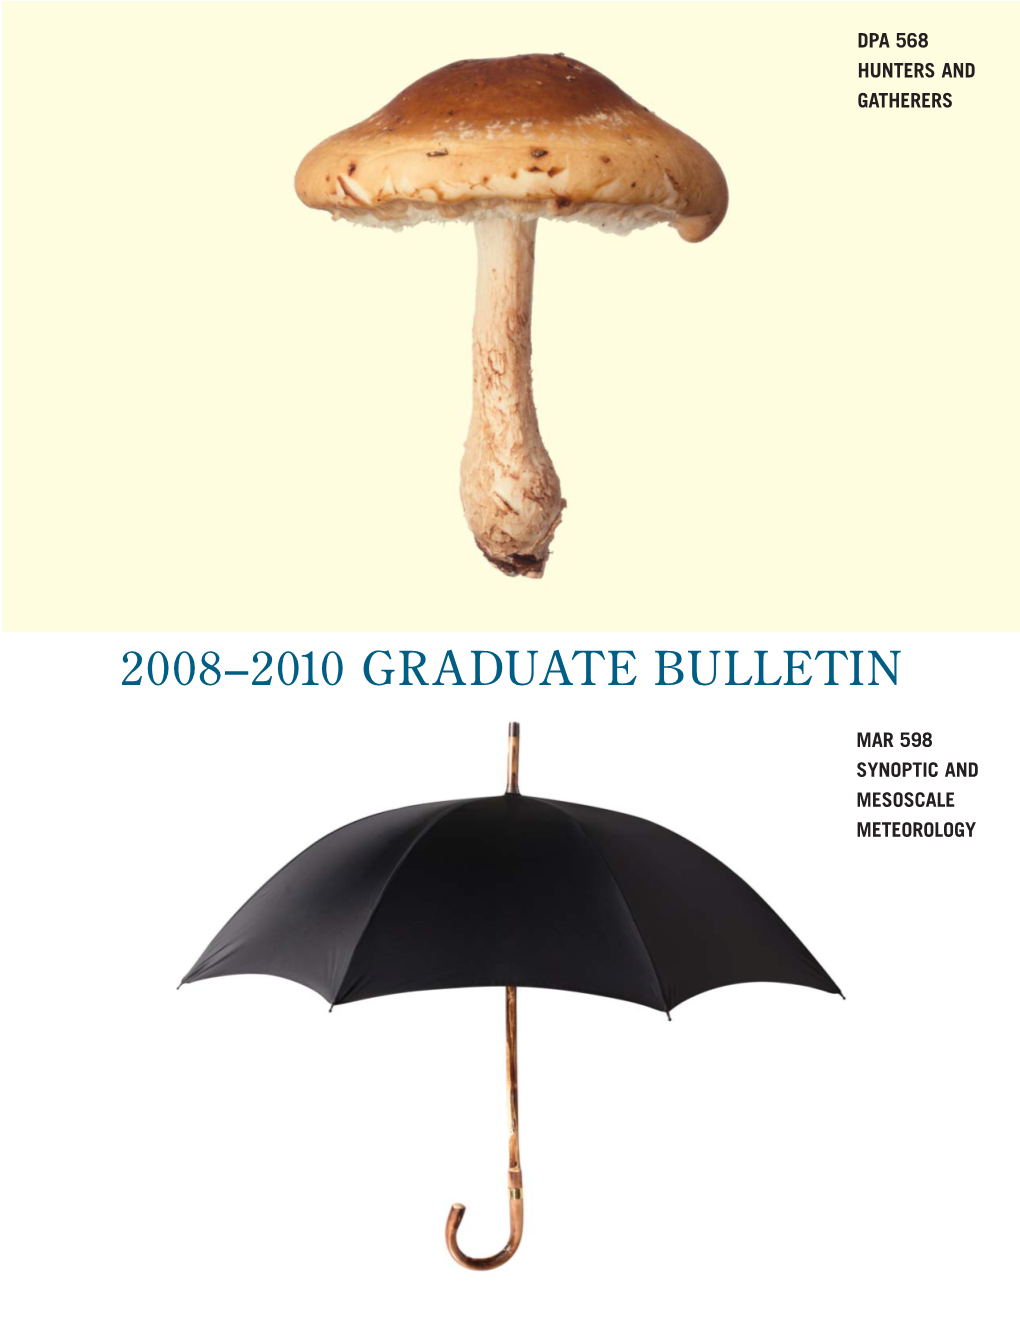 Graduate Bulletin